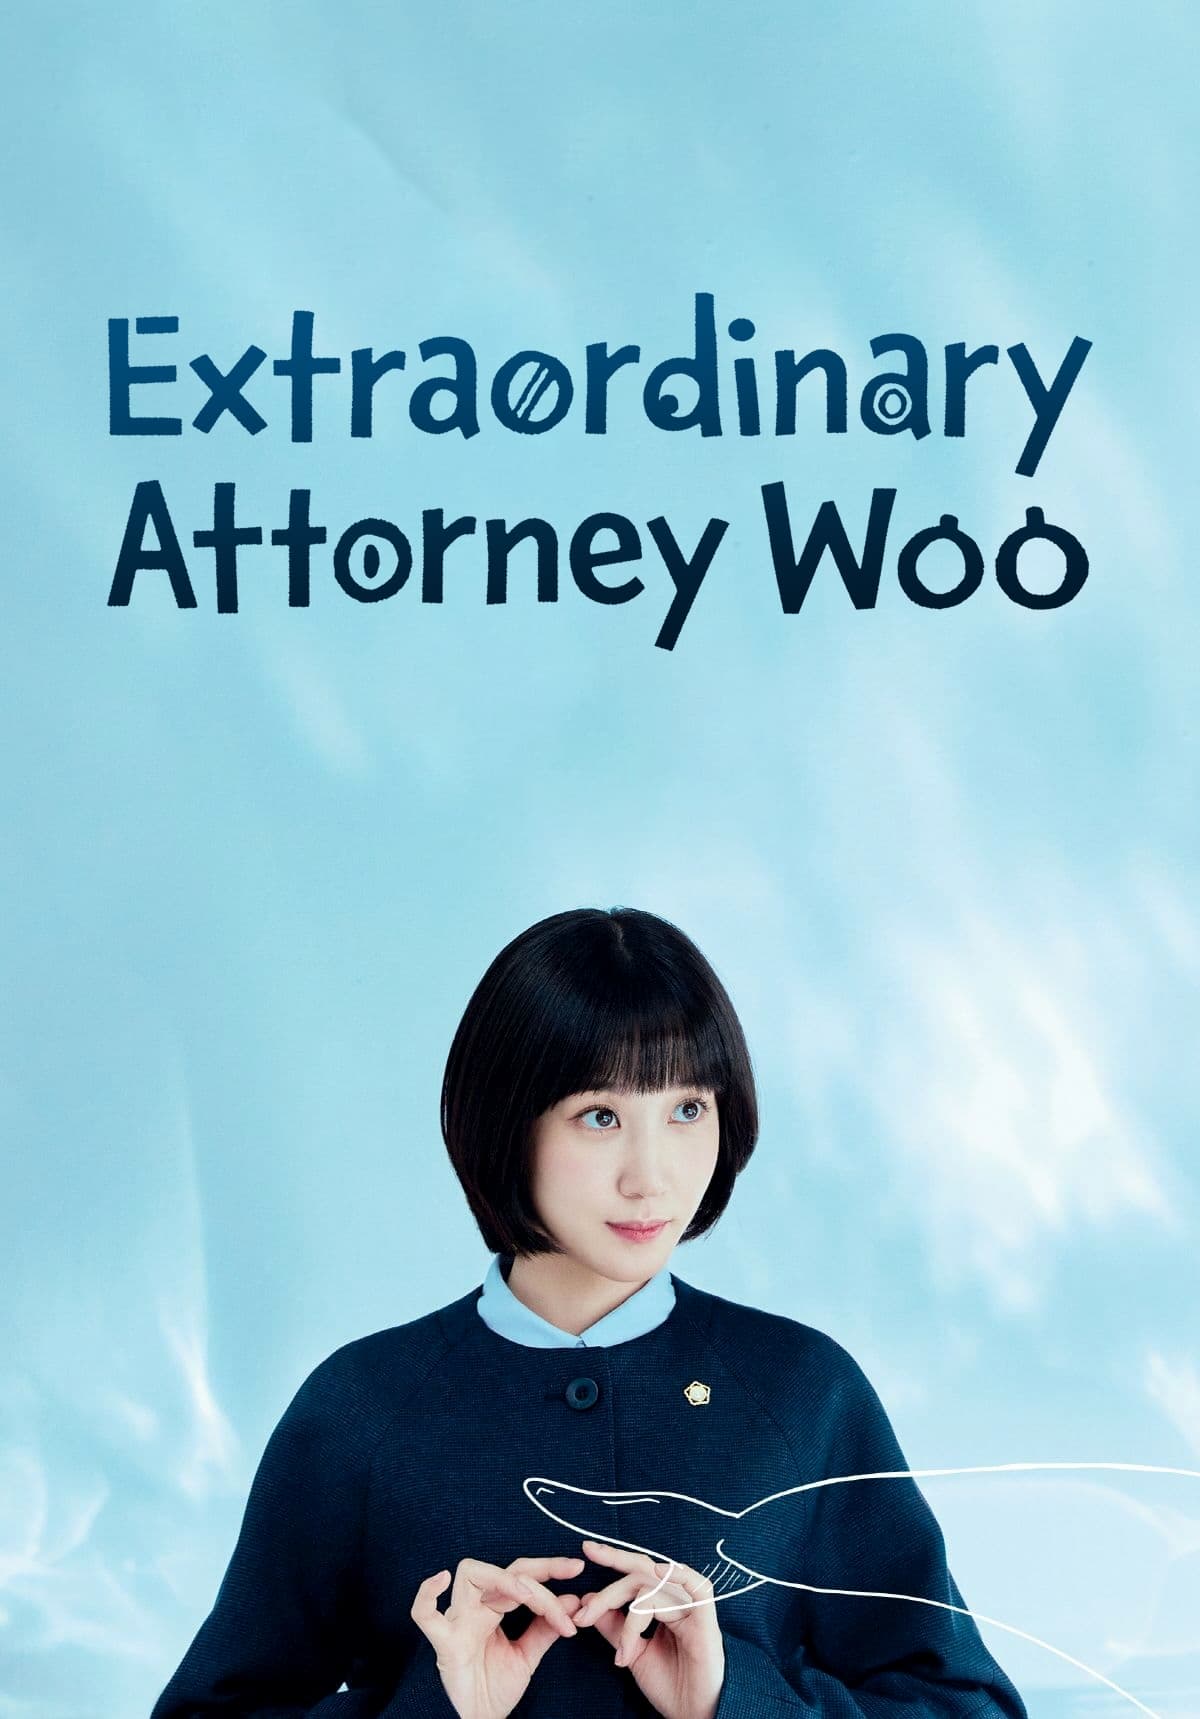 อูยองอู ทนายอัจฉริยะ Extraordinary Attorney Woo